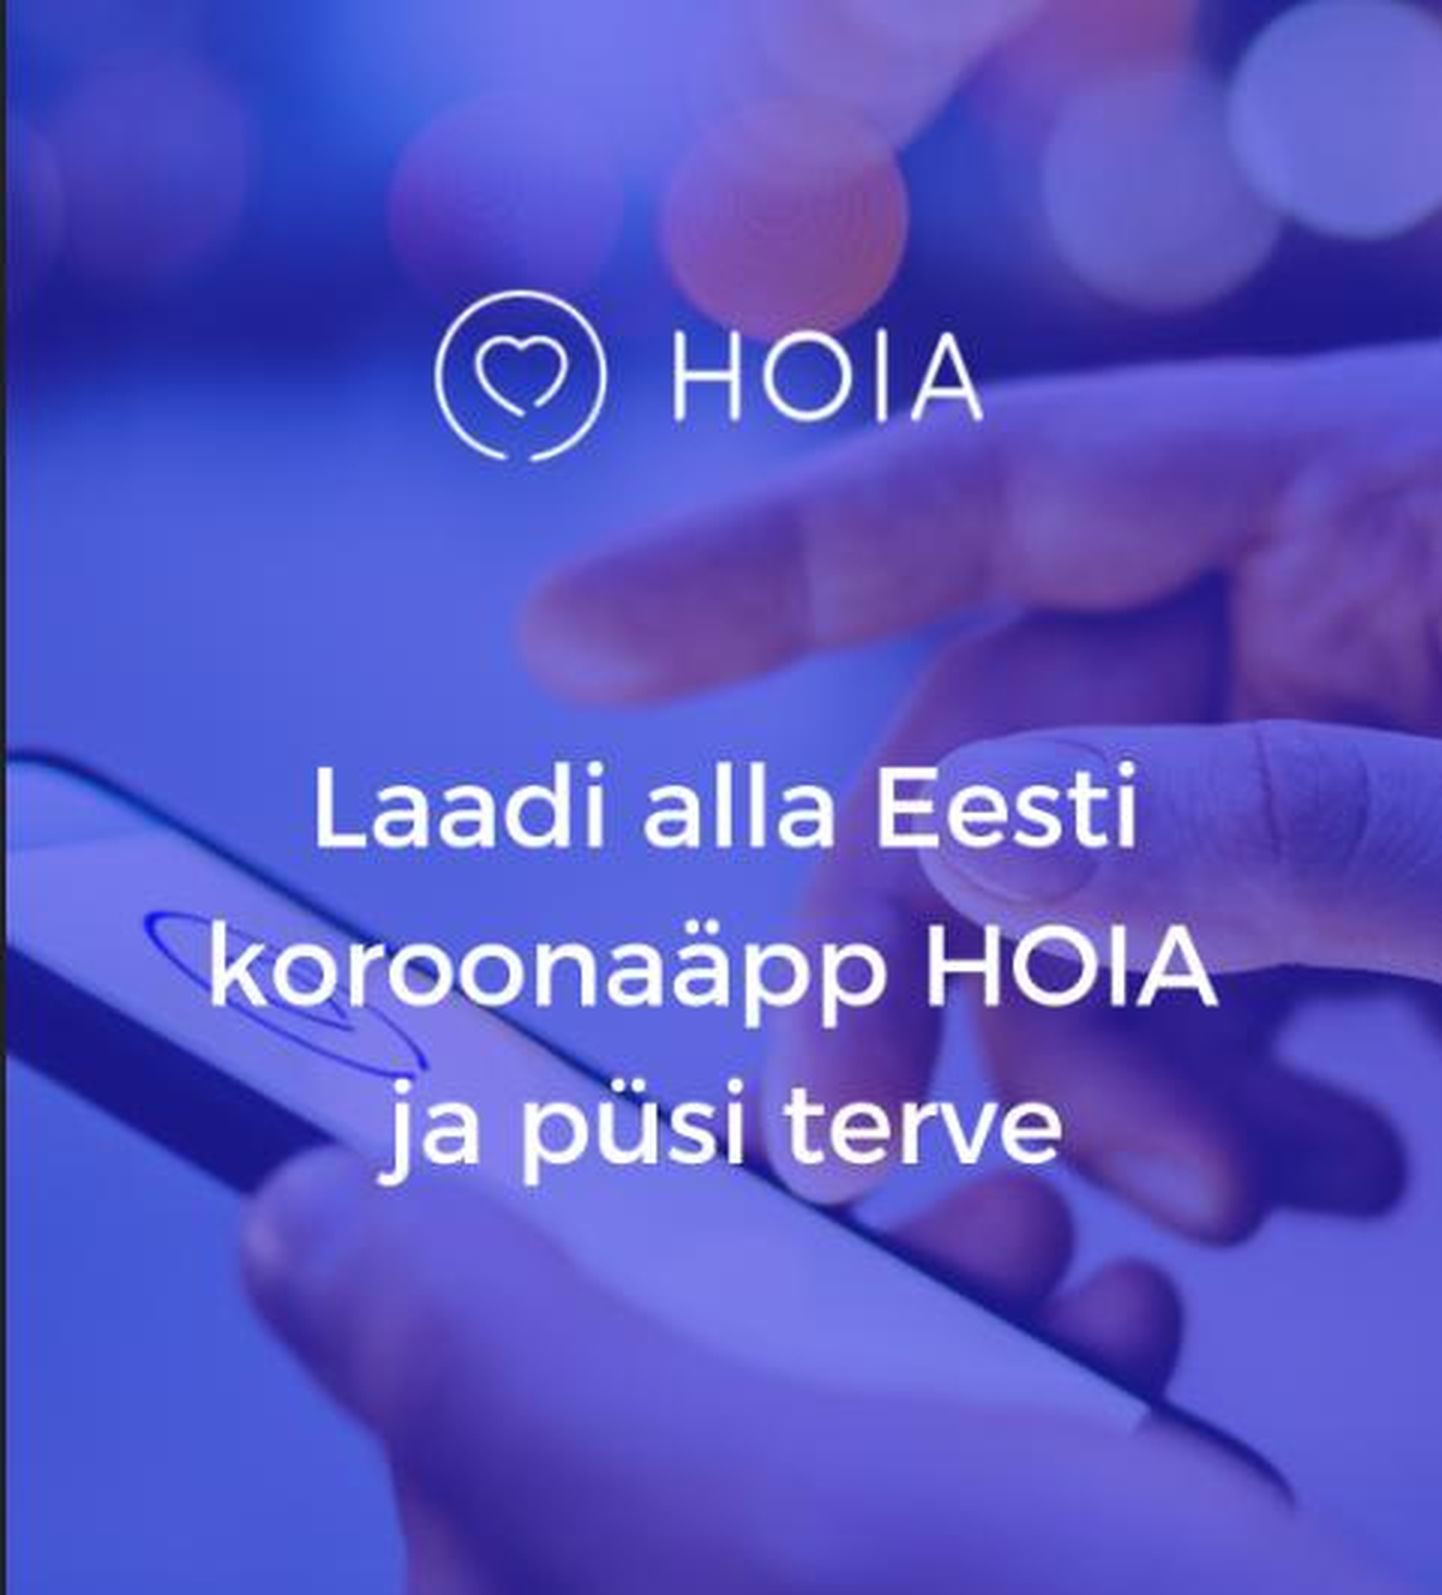 Эстонское мобильное приложение по отслеживанию контактов с носителями коронавируса Hoia